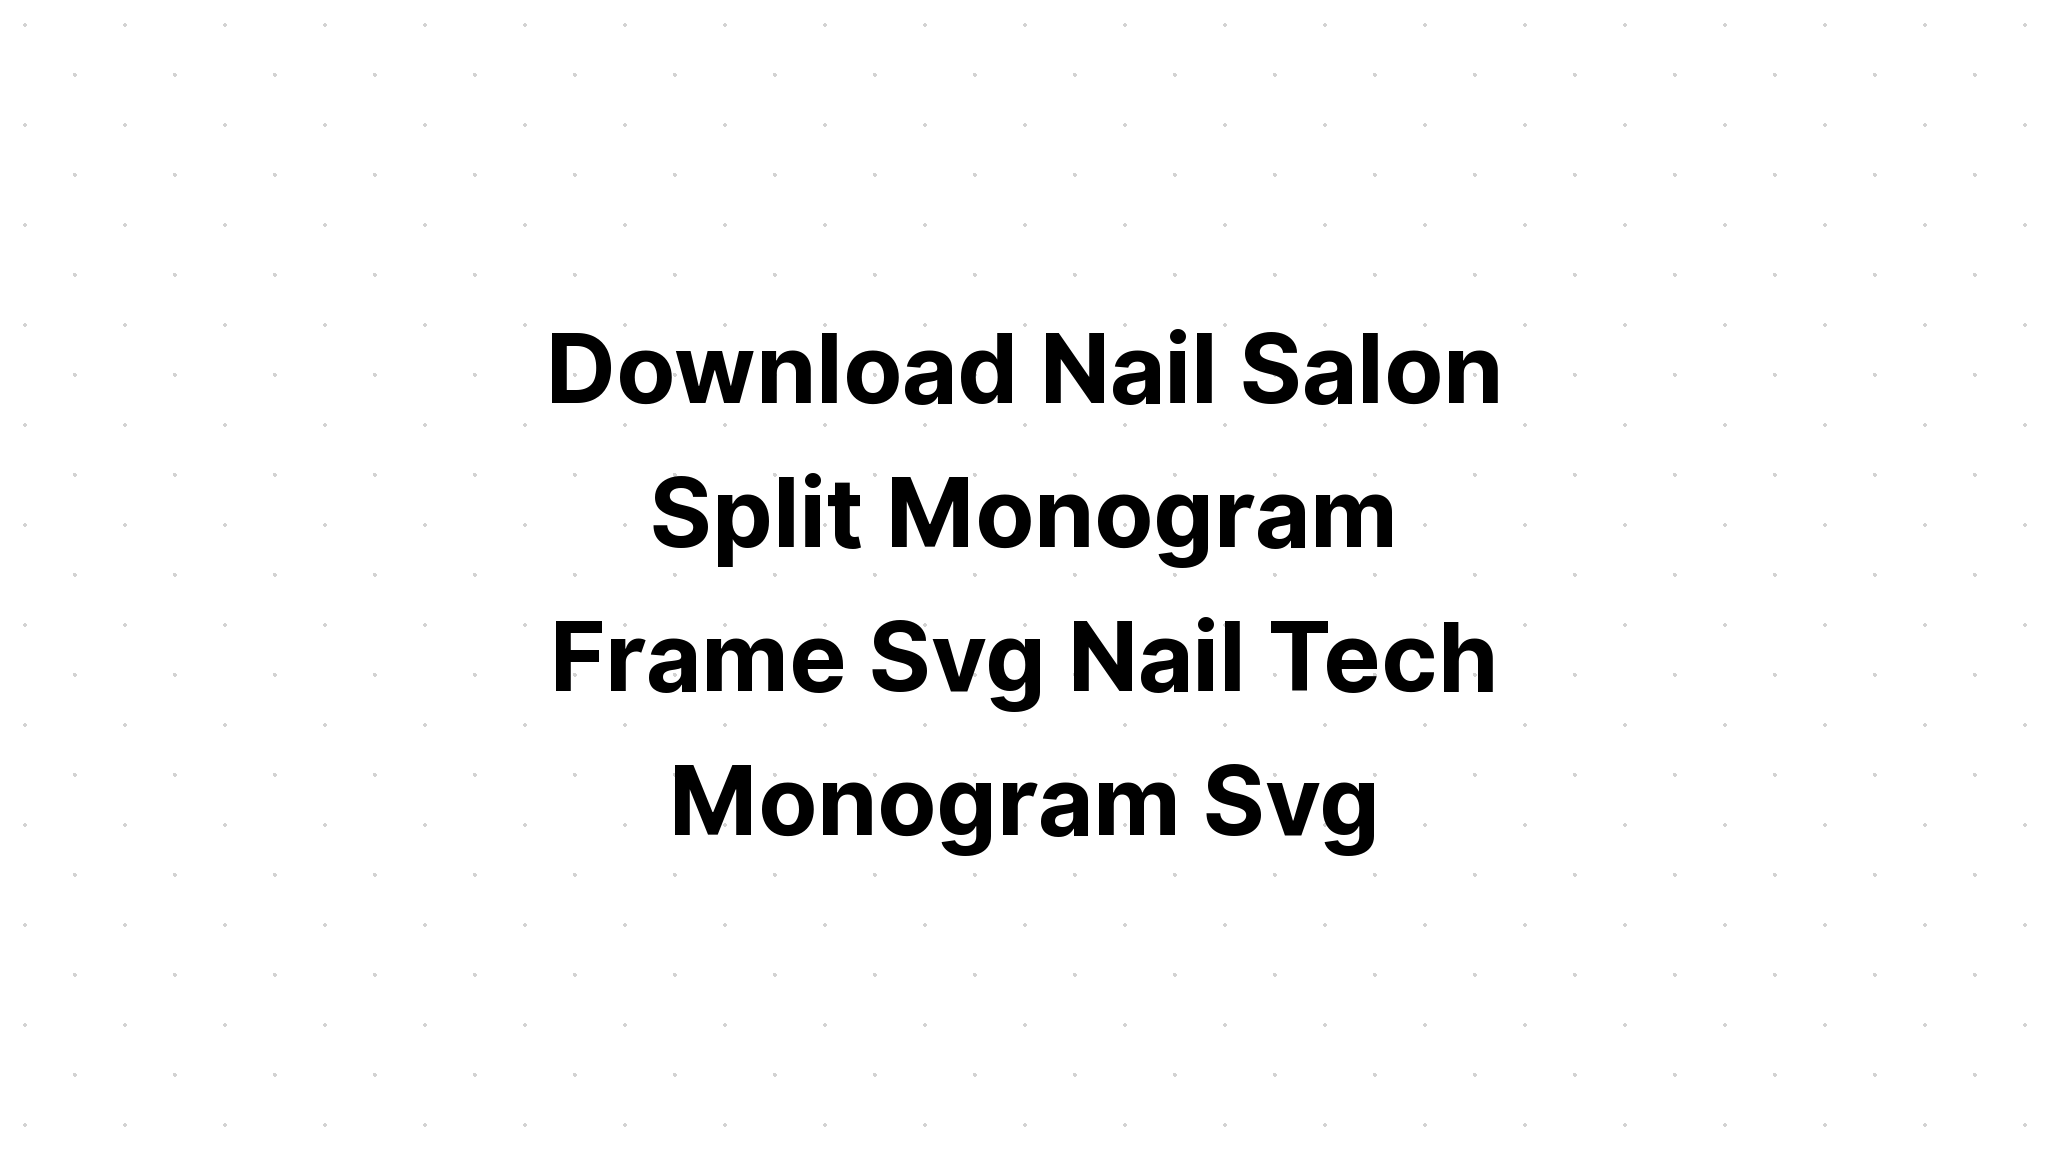 Download Monogram J Svg - Layered SVG Cut File